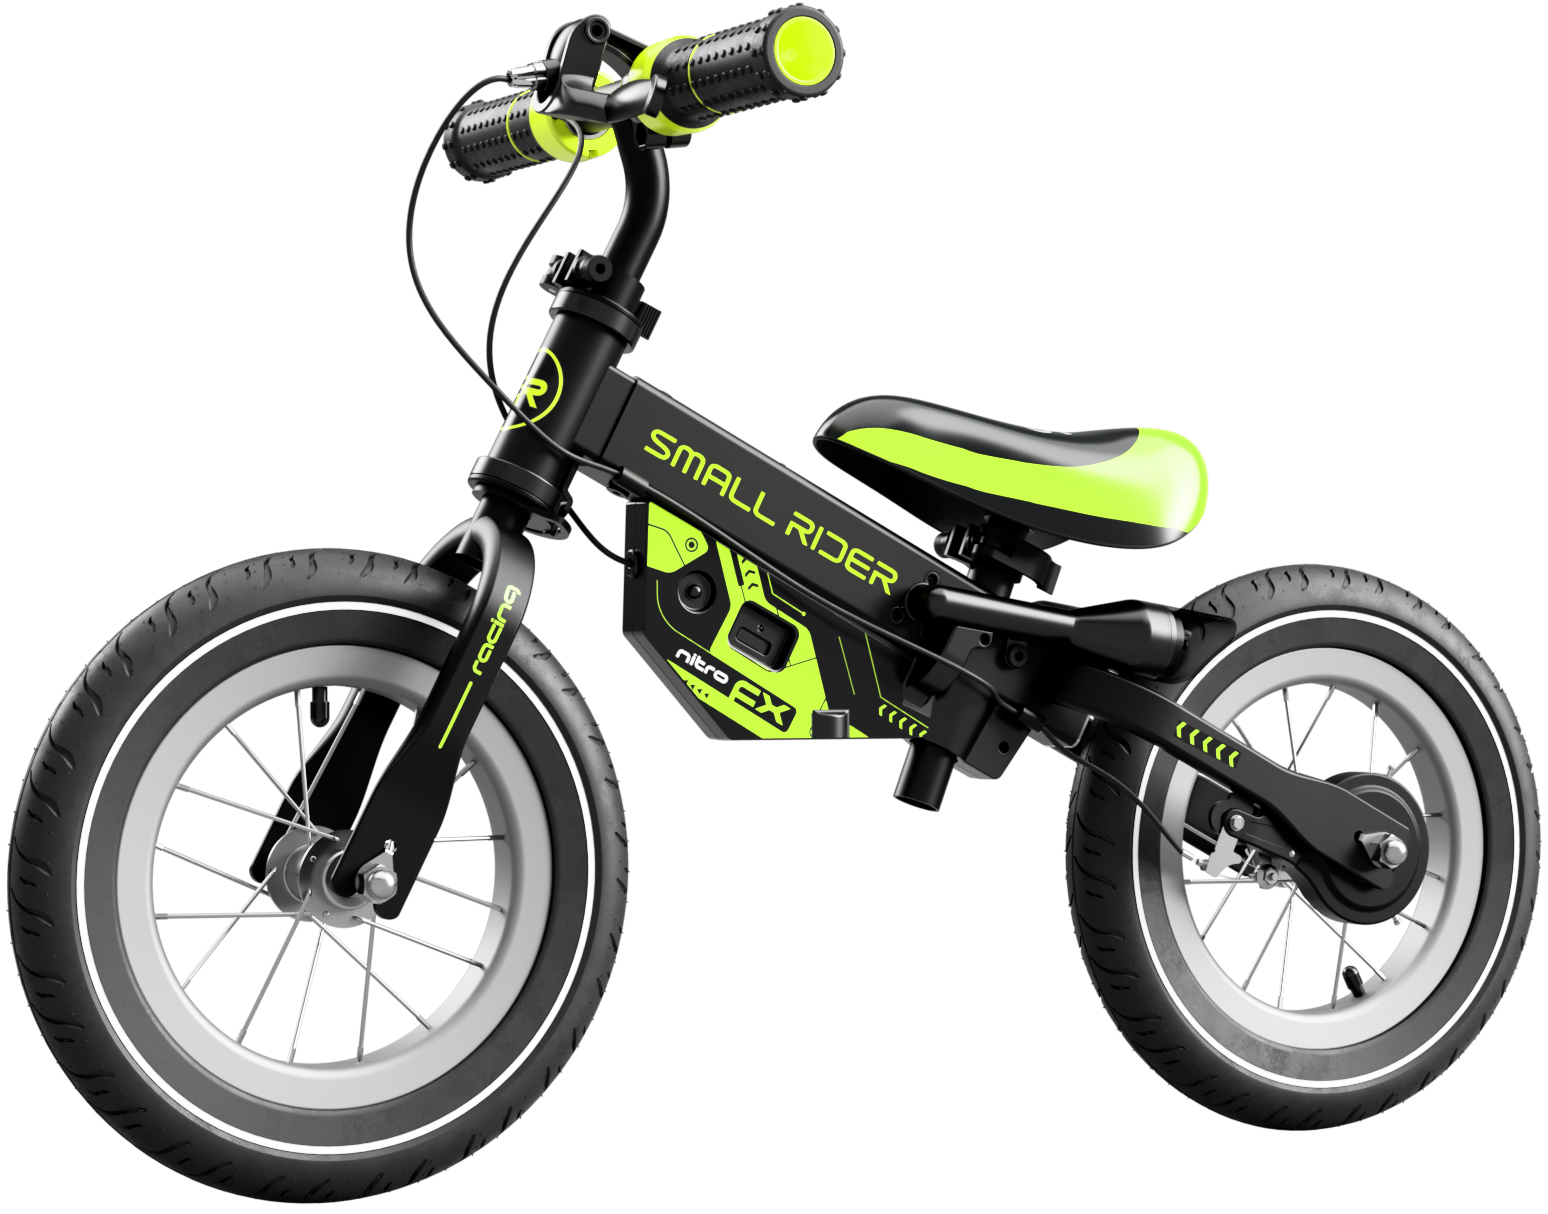 Детский беговел с надувными колесами Small Rider NITRO AIR Зеленый беговел small rider со спец эффектами nitro